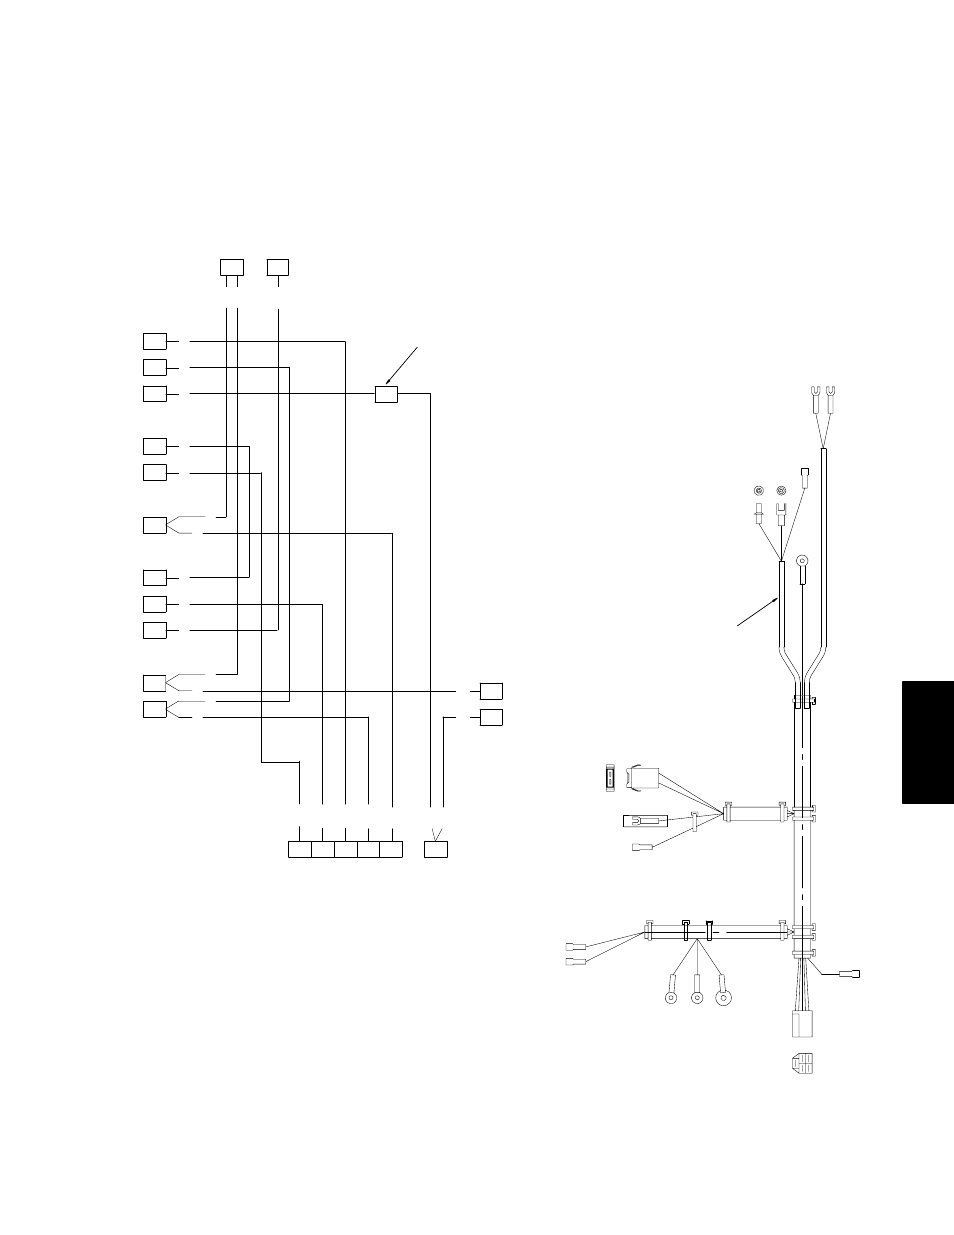 paragon 8141 00 wiring diagram